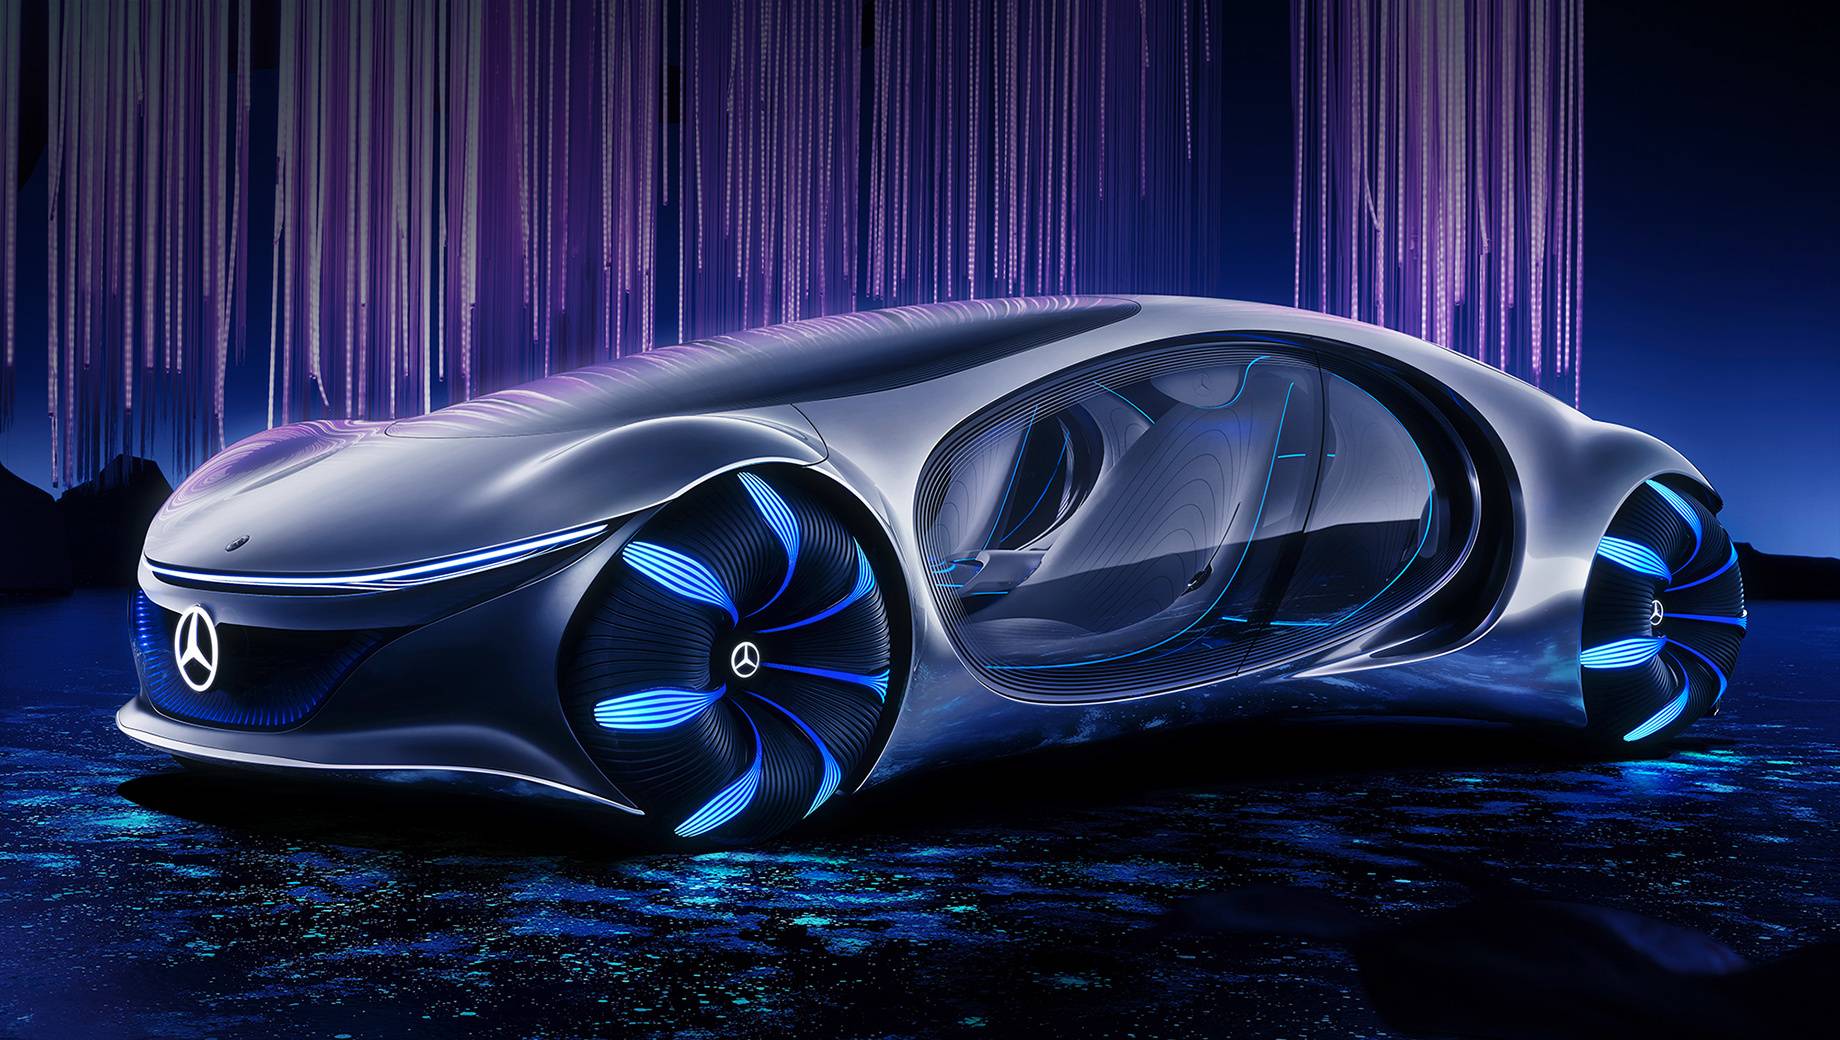 Mercedes benz vision avtr - автомобиль будущего без руля и панели приборов